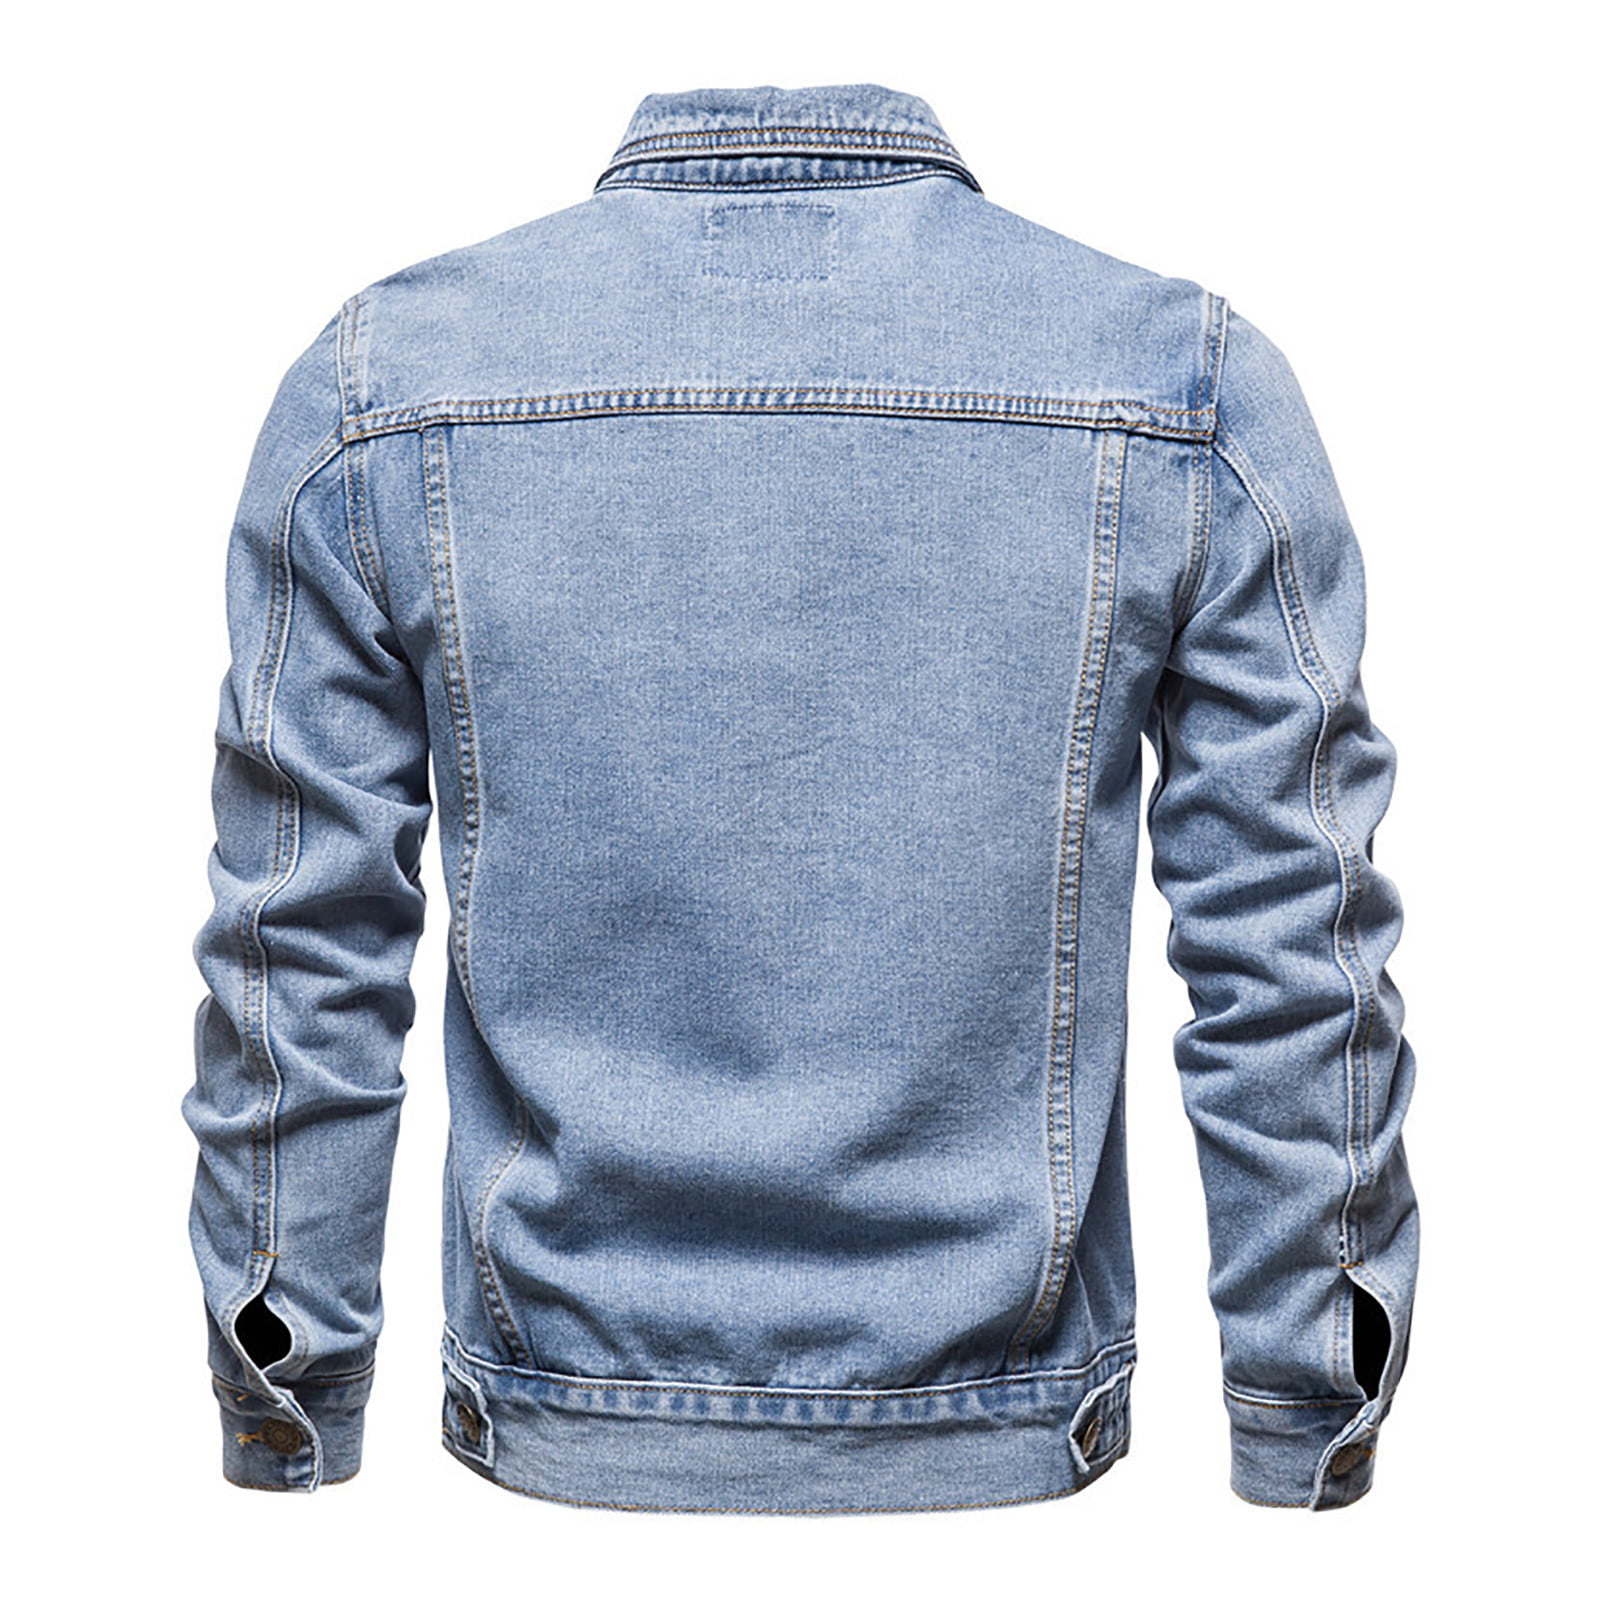 Classic Ripped Denim Jacket - Dark Blue - Lil Beatz Ltd